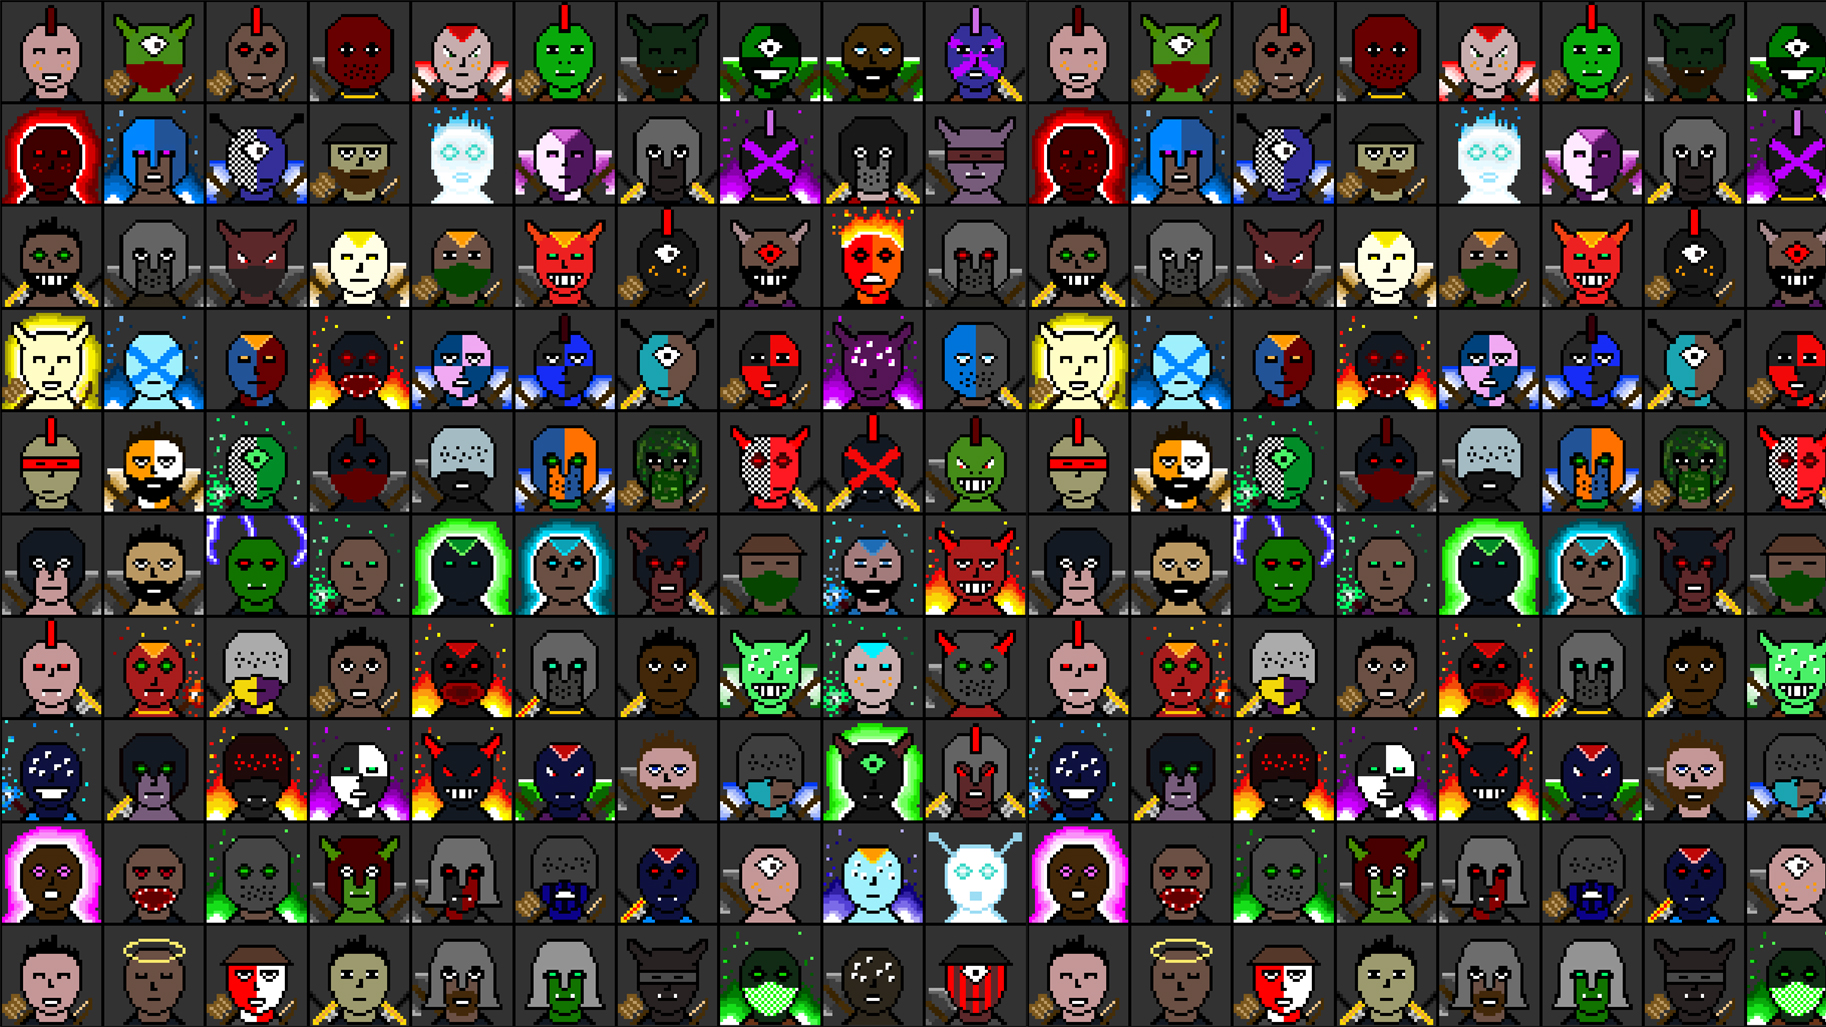 Personnages qui représentent des avatars d'utilisateurs de Myrmidons